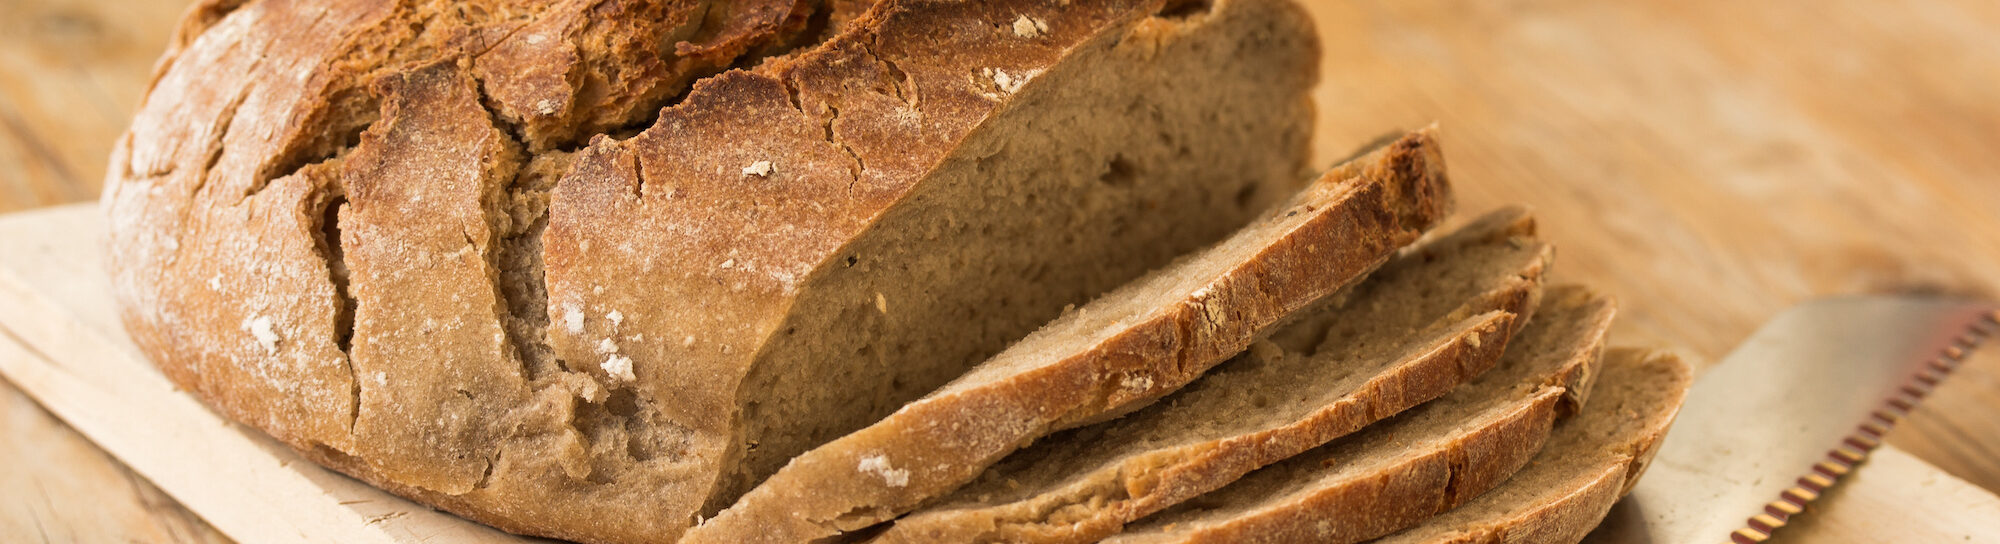 Switzerland needs to import more bread grain